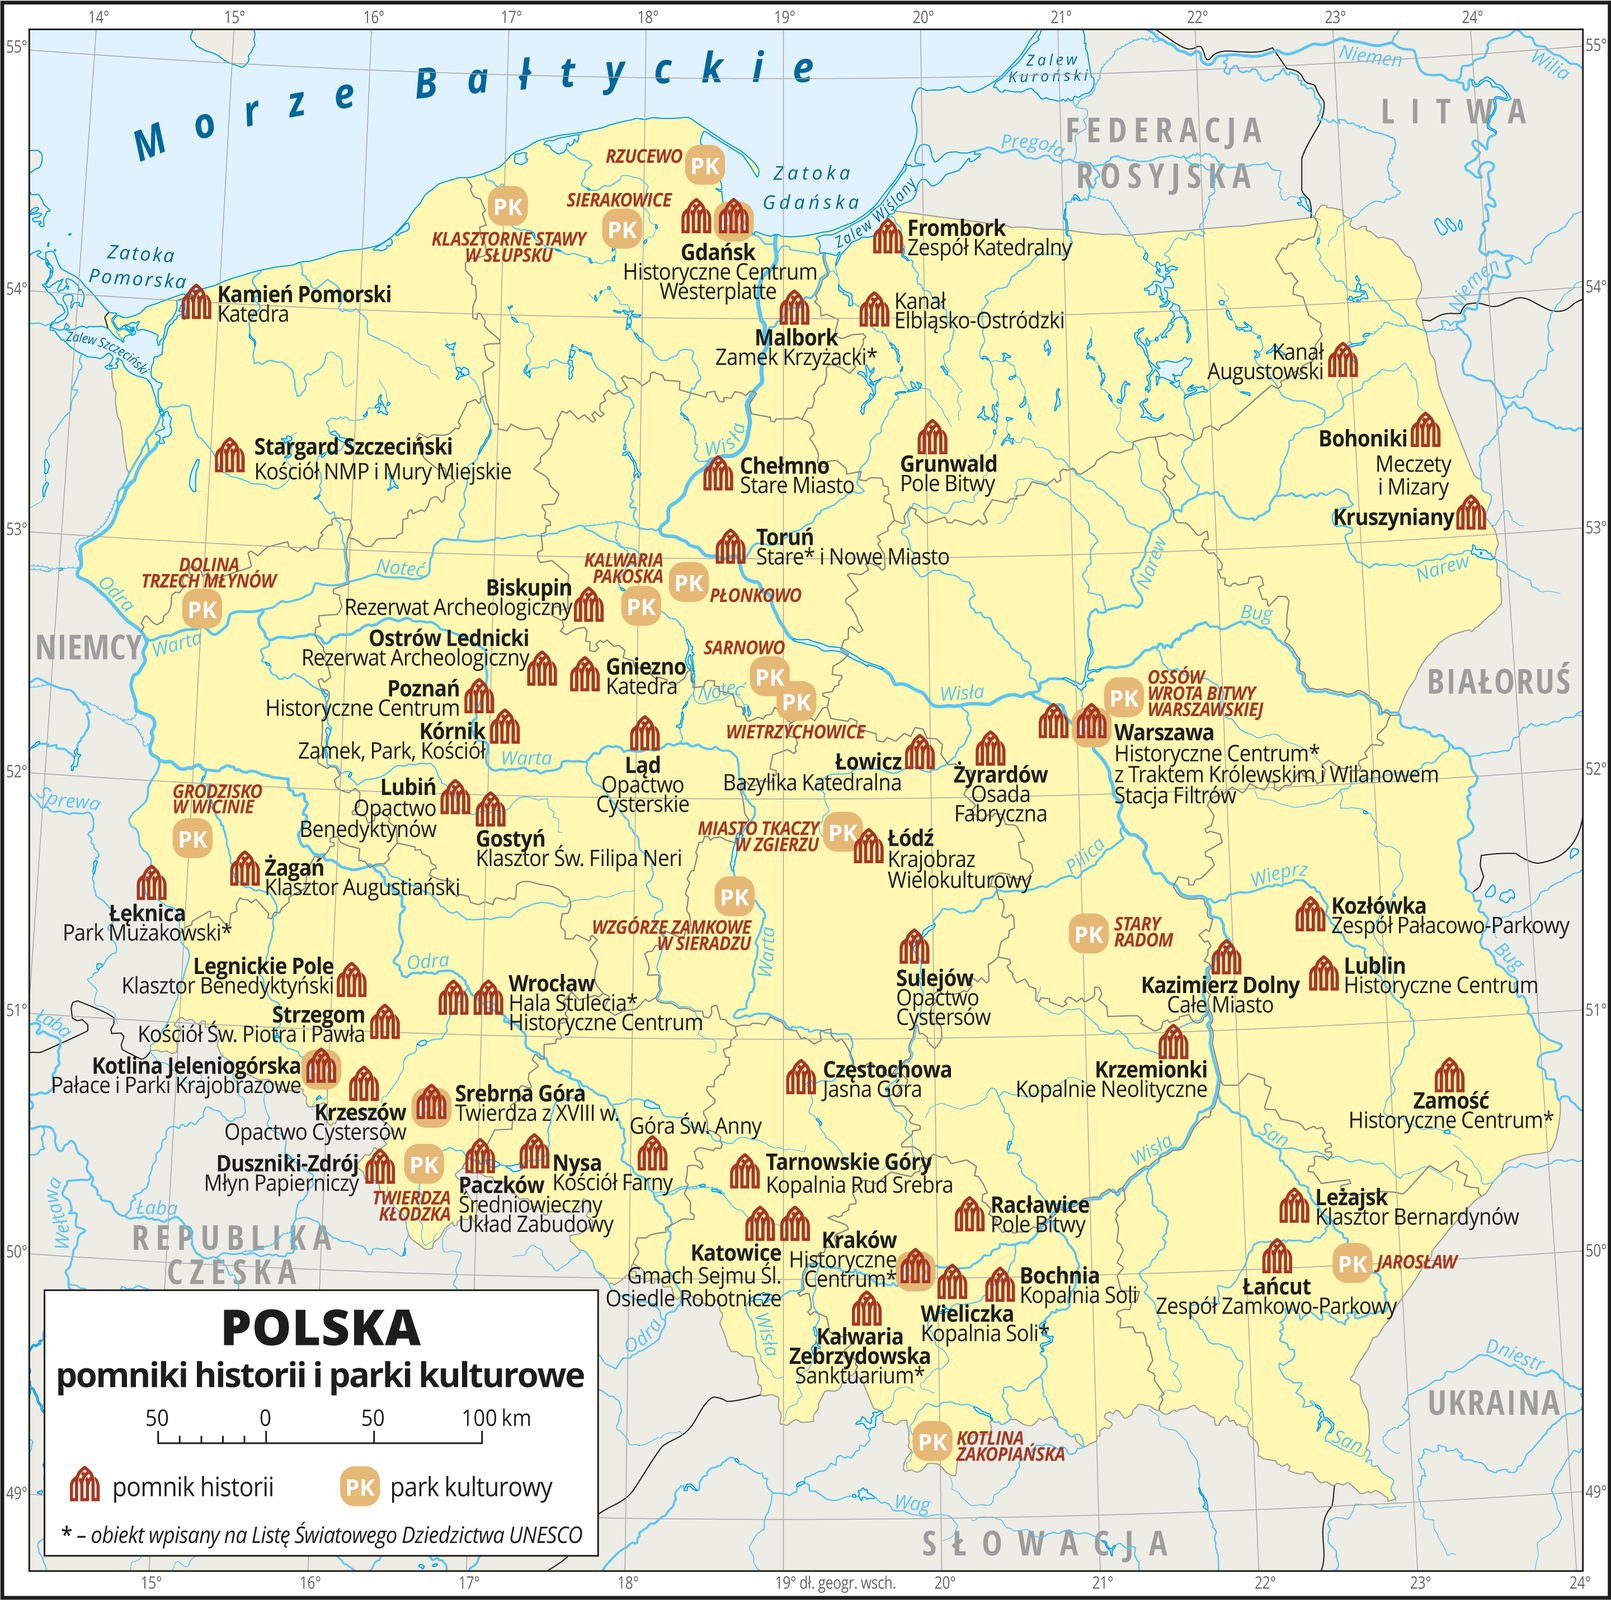 Na przedstawionej mapie Polski obszar kraju zaznaczono kolorem żółtym. Granice Polski i granice województw oznaczono szarymi liniami. Opisano państwa sąsiadujące. Na mapie za pomocą czerwonej sygnatury budynku przedstawiono pomniki historii w Polsce, a za pomocą sygnatury składającej się z liter PK na beżowym polu przedstawiono parki kulturowe. Na obszarze Polski znajduje się wiele pomników historii, od południa do środkowej części Polski rozmieszczone są równomiernie, mniej występuje ich w rejonie pojezierzy: Pomorskiego i Mazurskiego. Pomniki historii opisane są w kolorze czarnym nazwą miejscowości, w której się znajdują i nazwą własną – na przykład: Malbork – Zamek Krzyżacki, Wieliczka – Kopalnia Soli. Obiekty wpisane na Listę Światowego Dziedzictwa UNESCO oznaczono gwiazdką. Parków kultury jest mniej, sygnatury najgęściej występują w centrum Polski, na przykład: Miasto Tkaczy w Zgierzu, Wzgórze Zamkowe w Sieradzu. Nazwy parków kultury opisano kolorem czerwonym. Mapa zawiera południki i równoleżniki, dookoła mapy w białej ramce opisano współrzędne geograficzne co jeden stopień. W legendzie umieszczonej w dolnym lewym rogu ramki objaśniono znaki użyte na mapie.